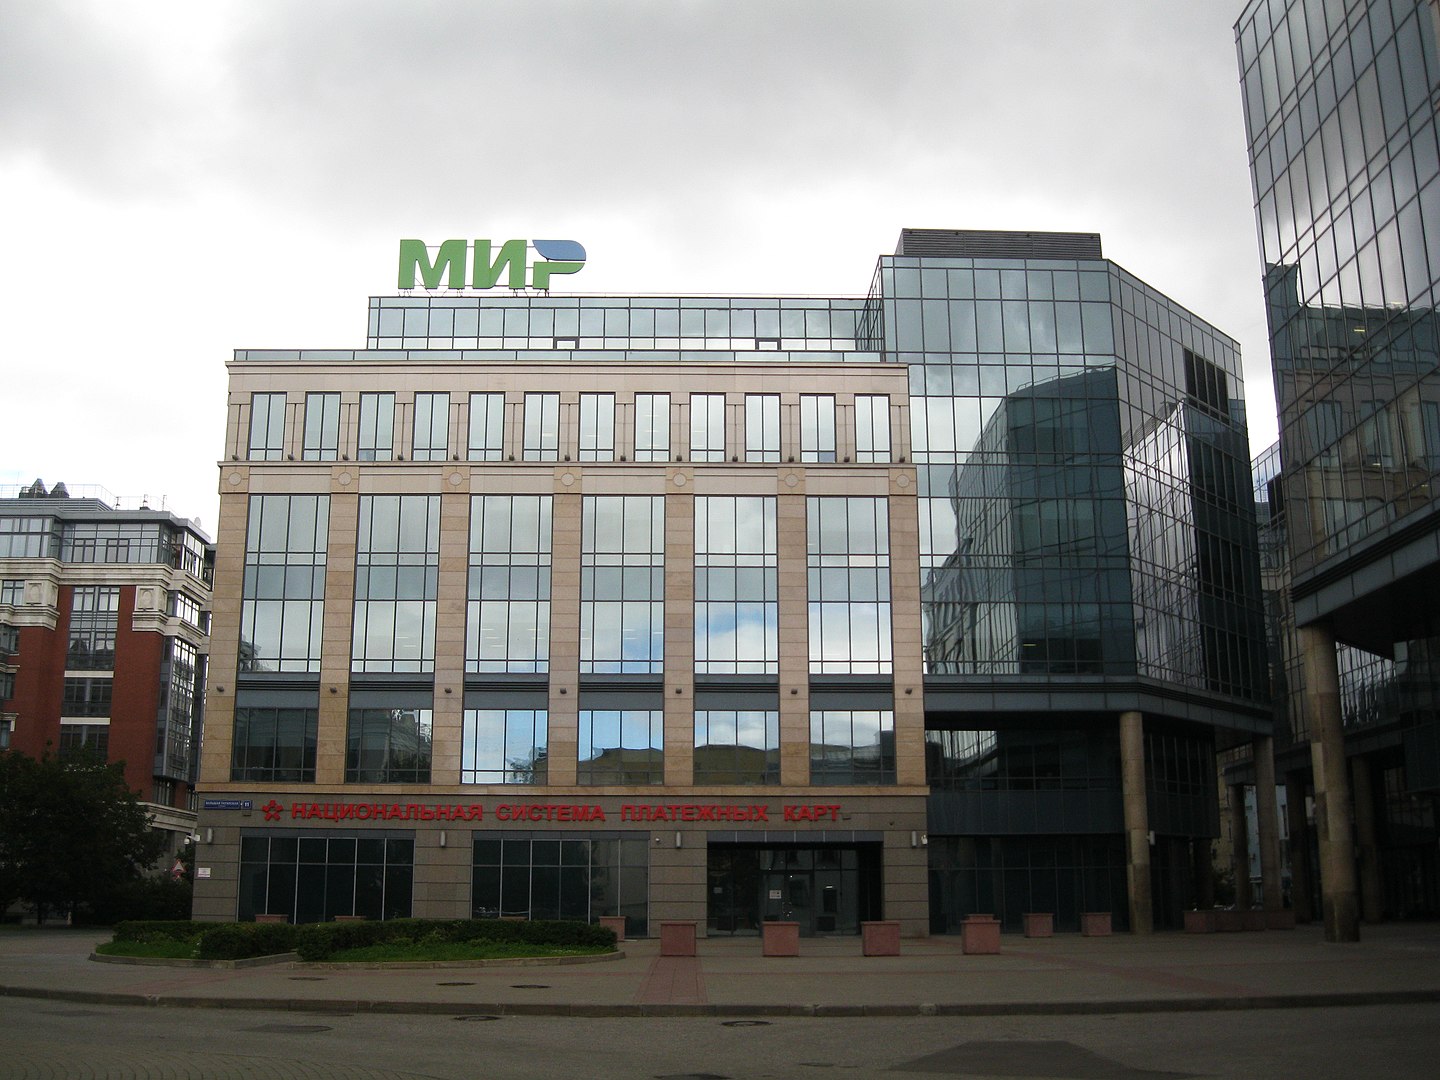 siège du système national de cartes de paiement (Mir) à Moscou